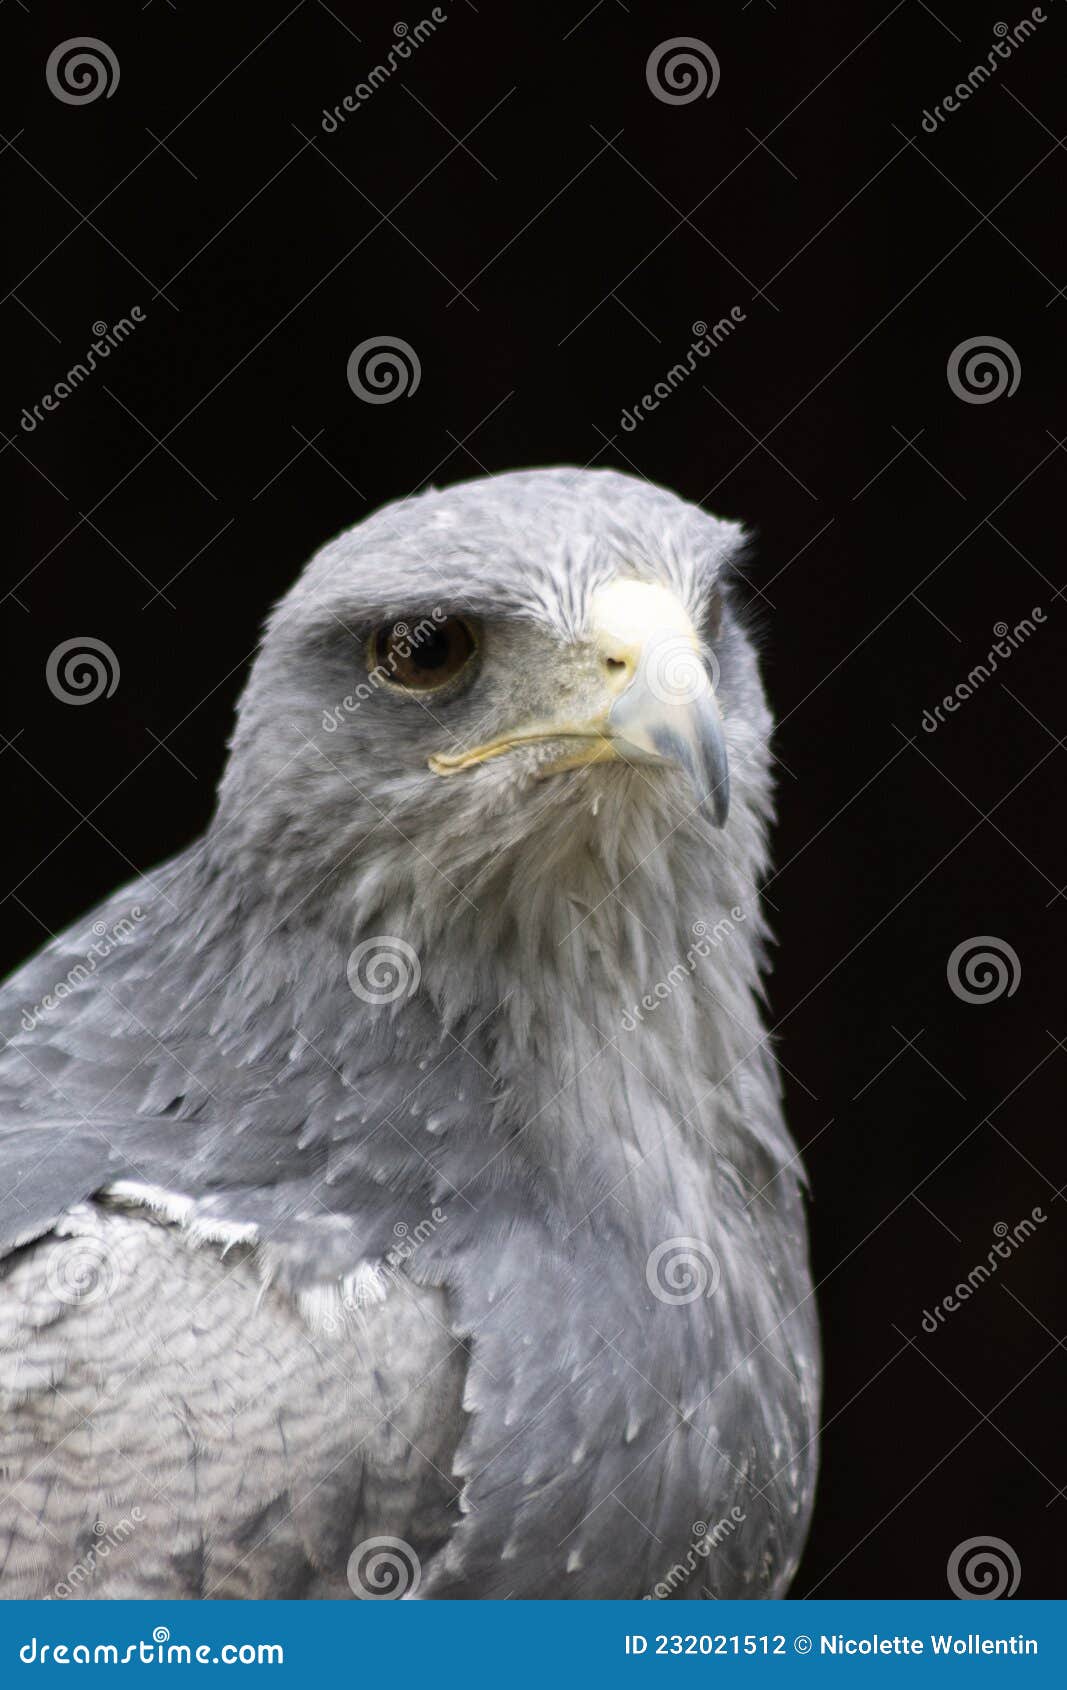 cordillary eagle blue buzzard or aguja geranoaÃÂ«tus melanoleucus